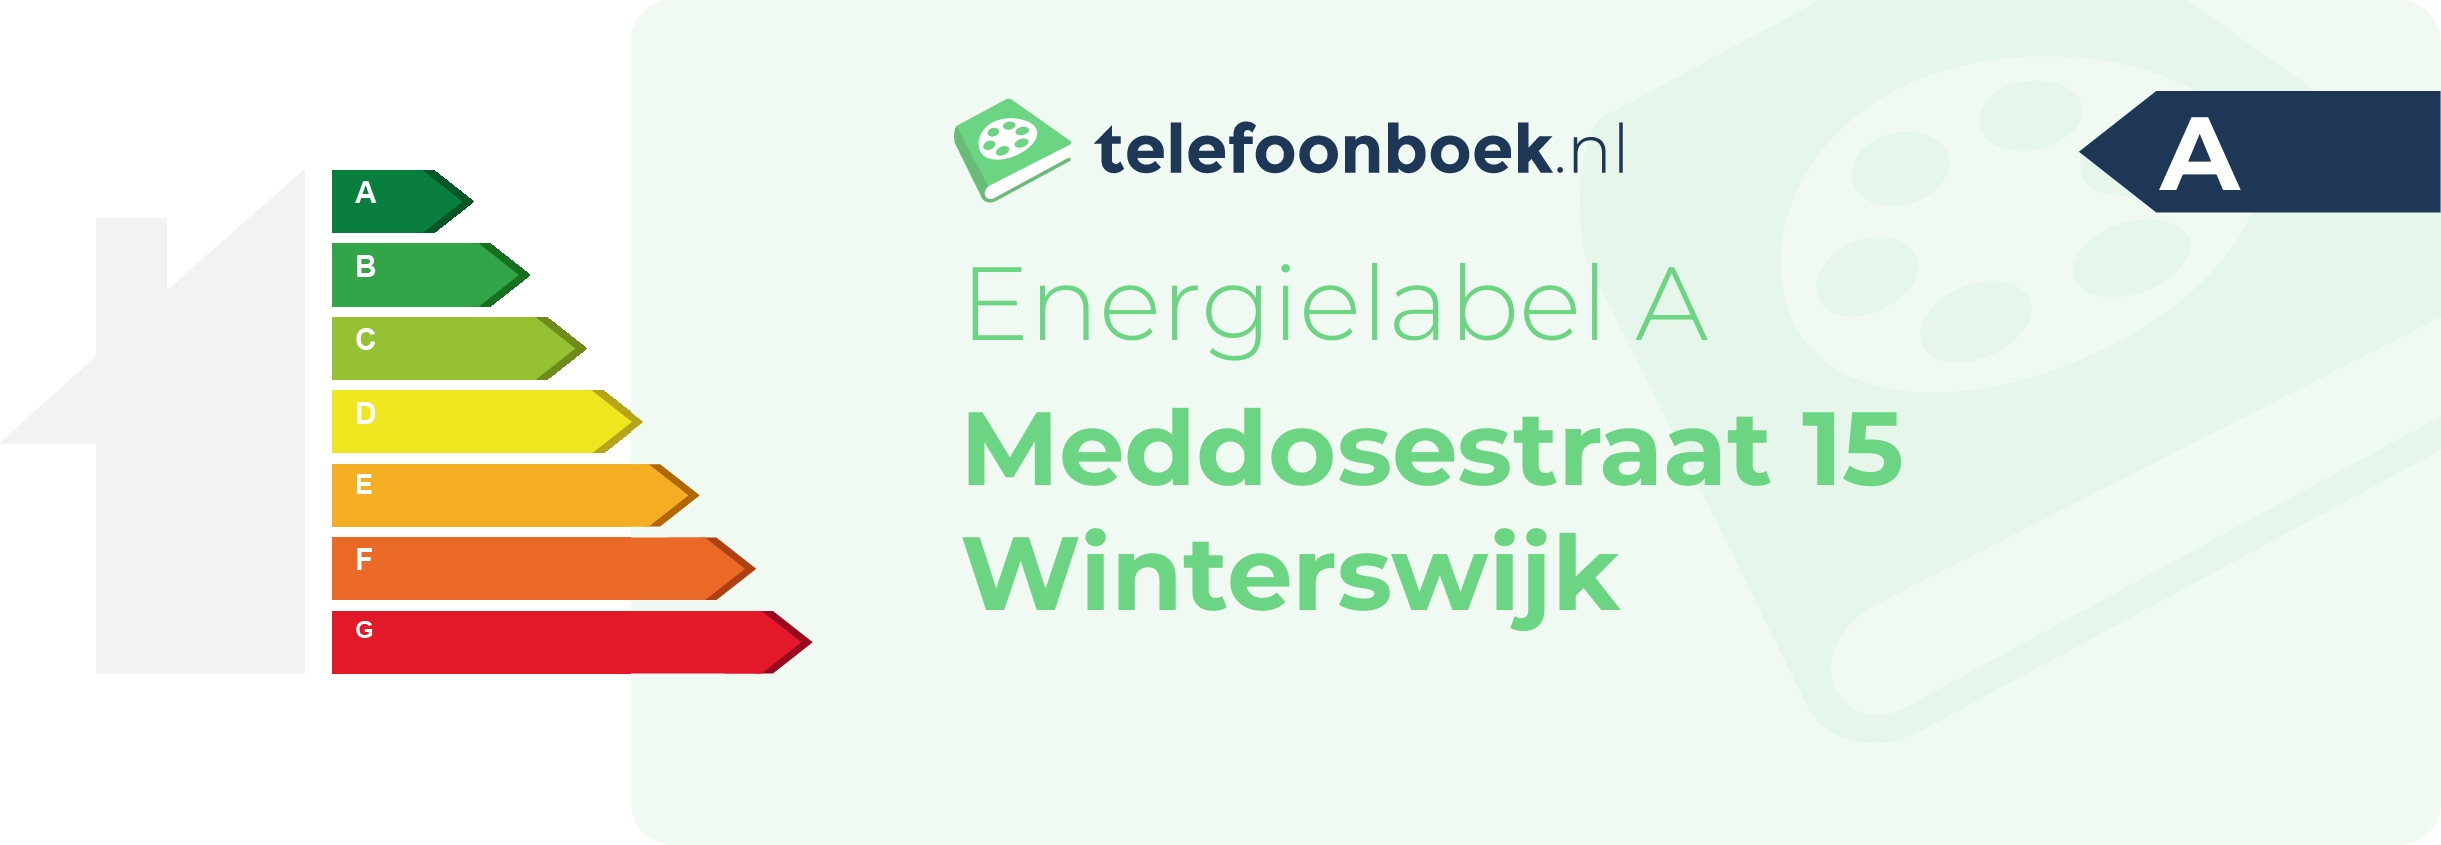 Energielabel Meddosestraat 15 Winterswijk